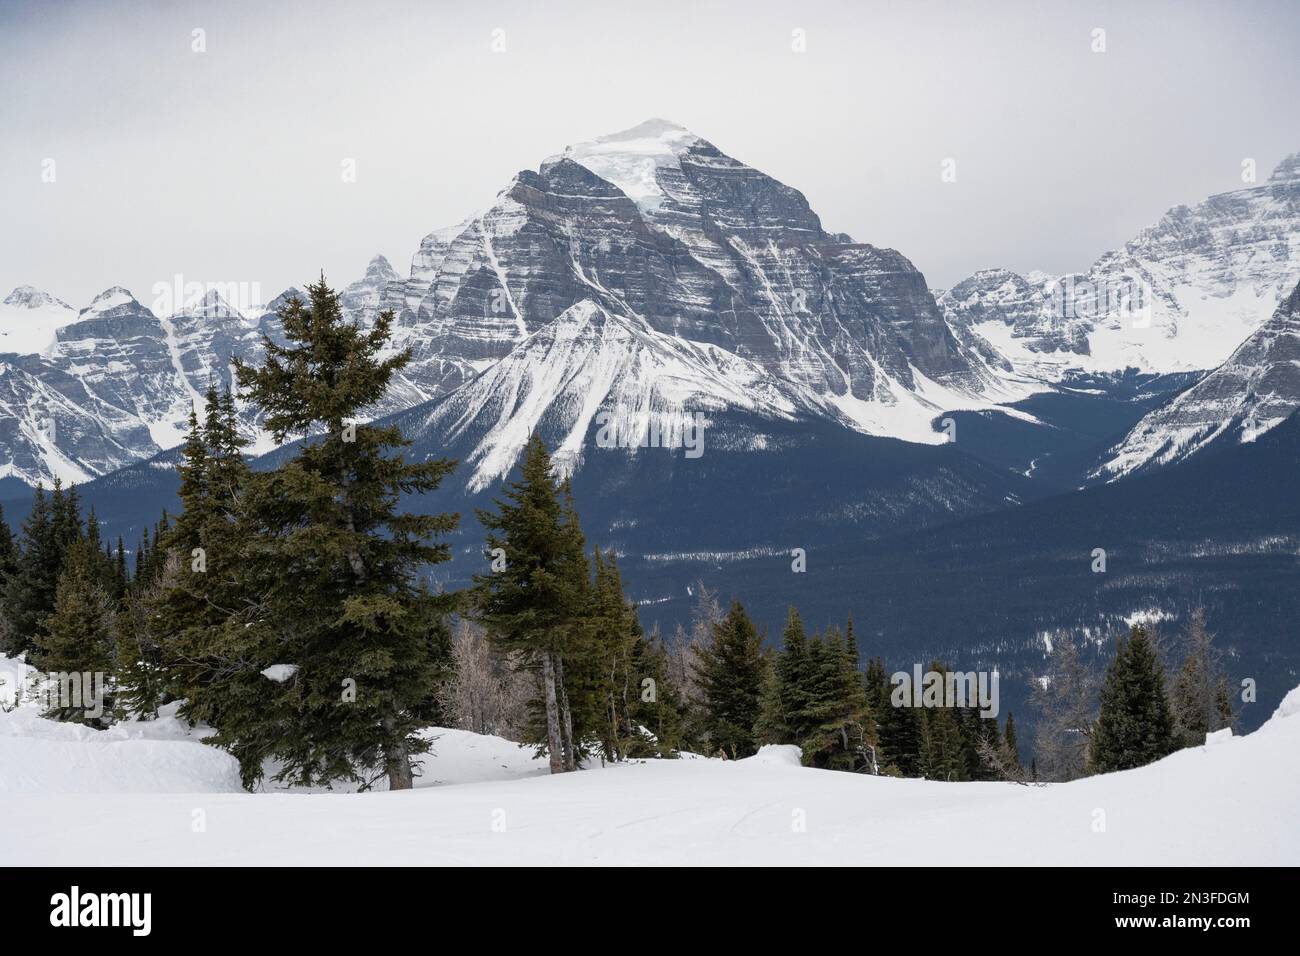 Vue sur les montagnes Rocheuses depuis une piste de ski dans une station de ski dans le parc national Banff, Alberta, Canada ; Improvement District No. 9, Alberta, Canada Banque D'Images